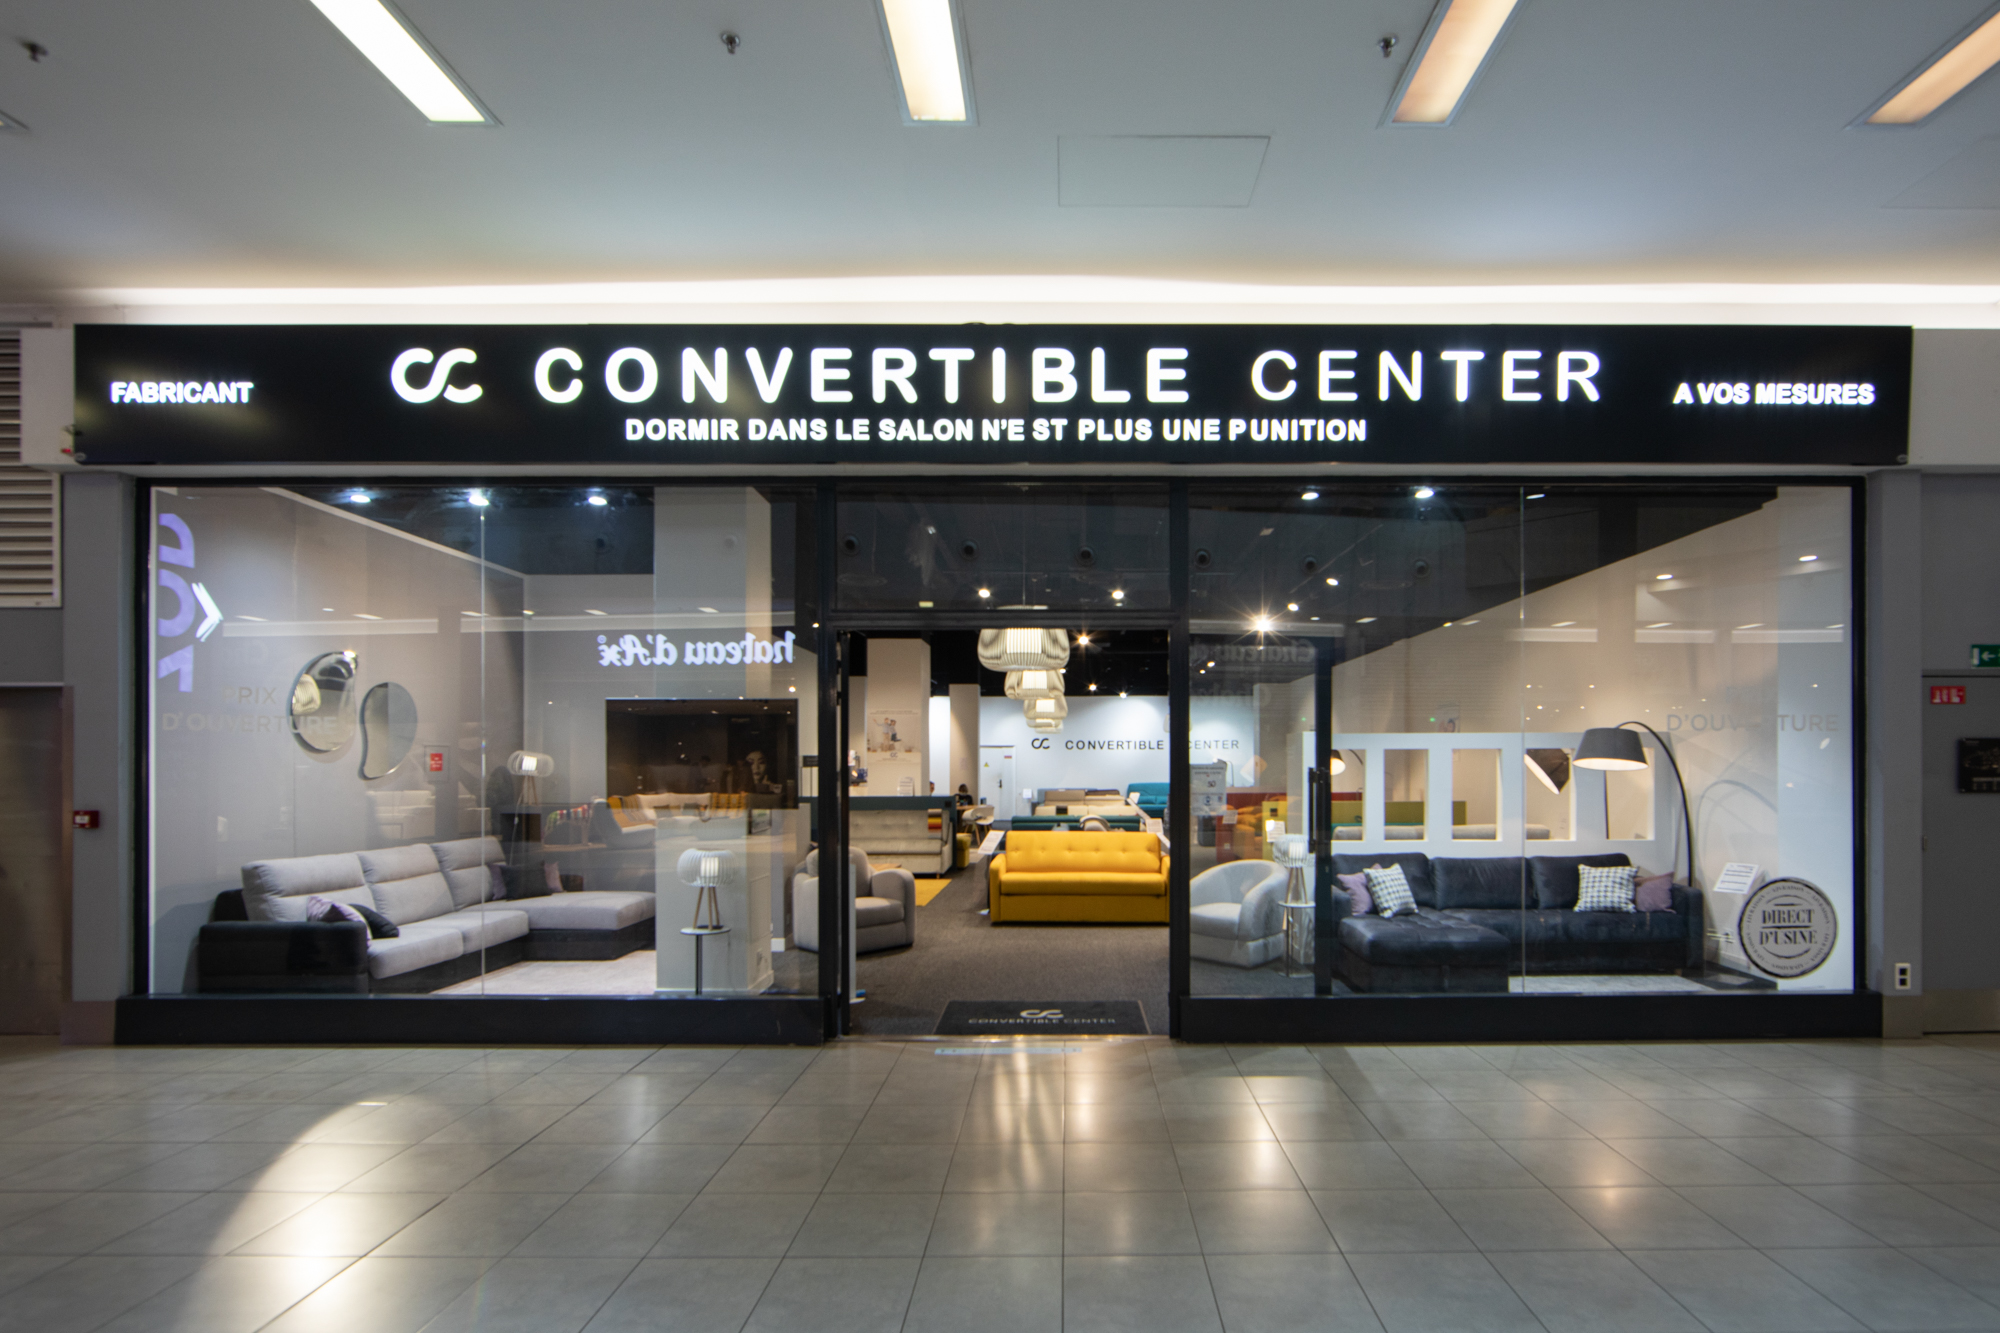 Convertible center